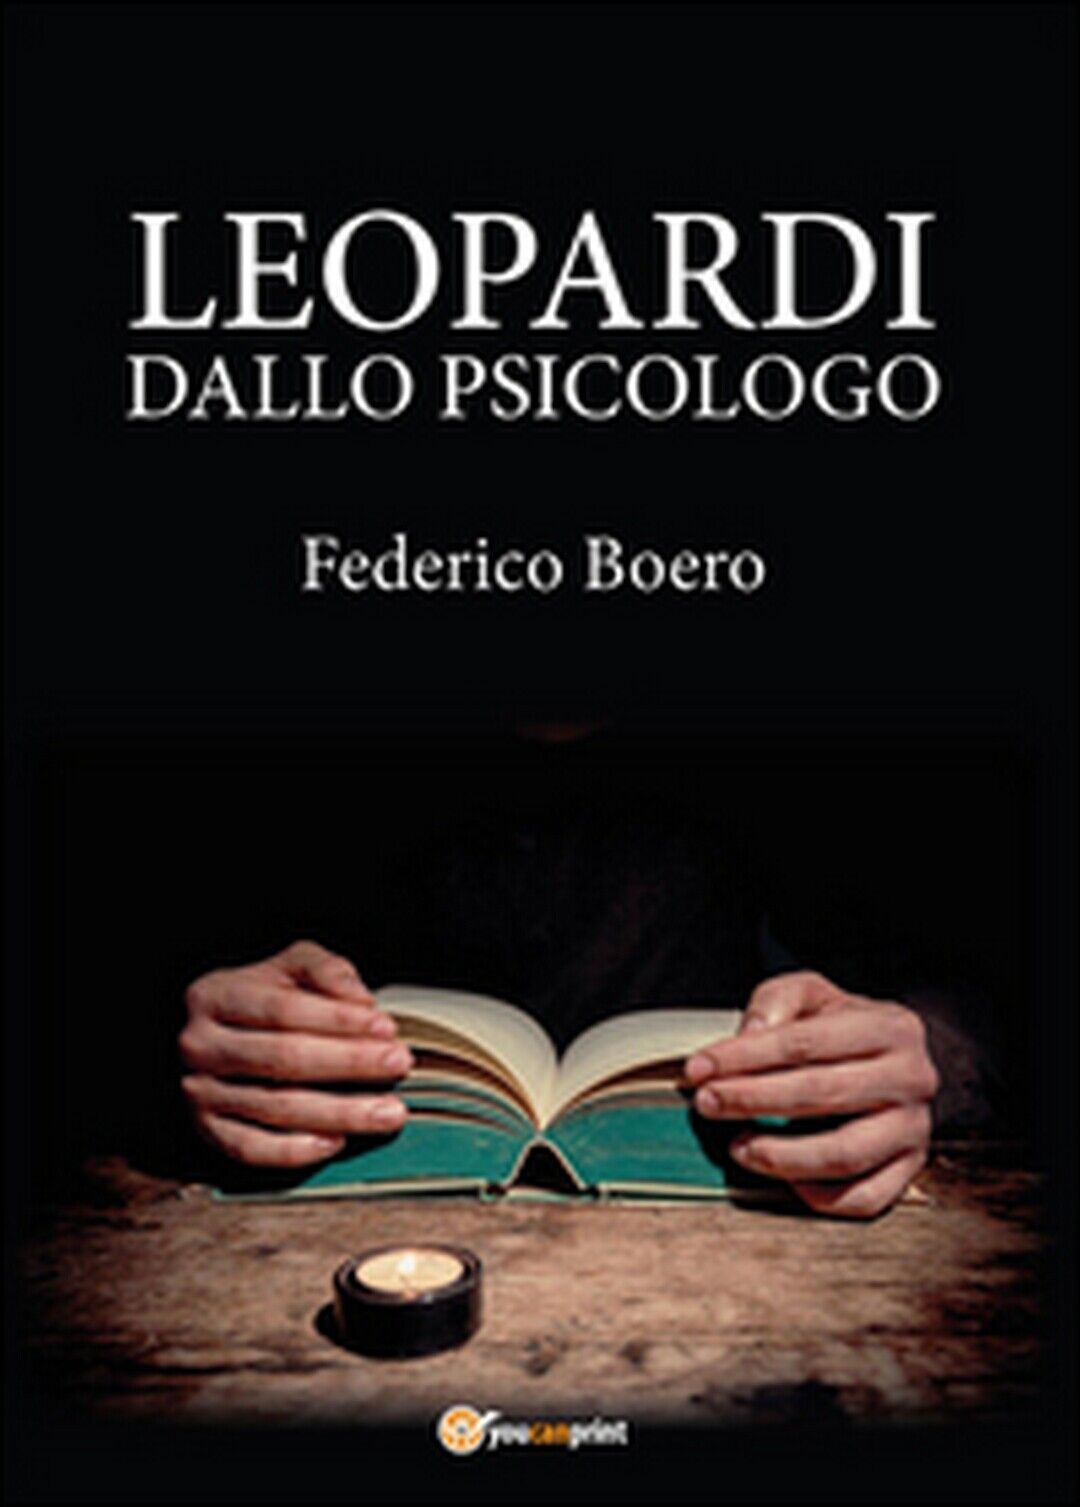 Leopardi dallo psicologo  di Federico Boero,  2015,  Youcanprint